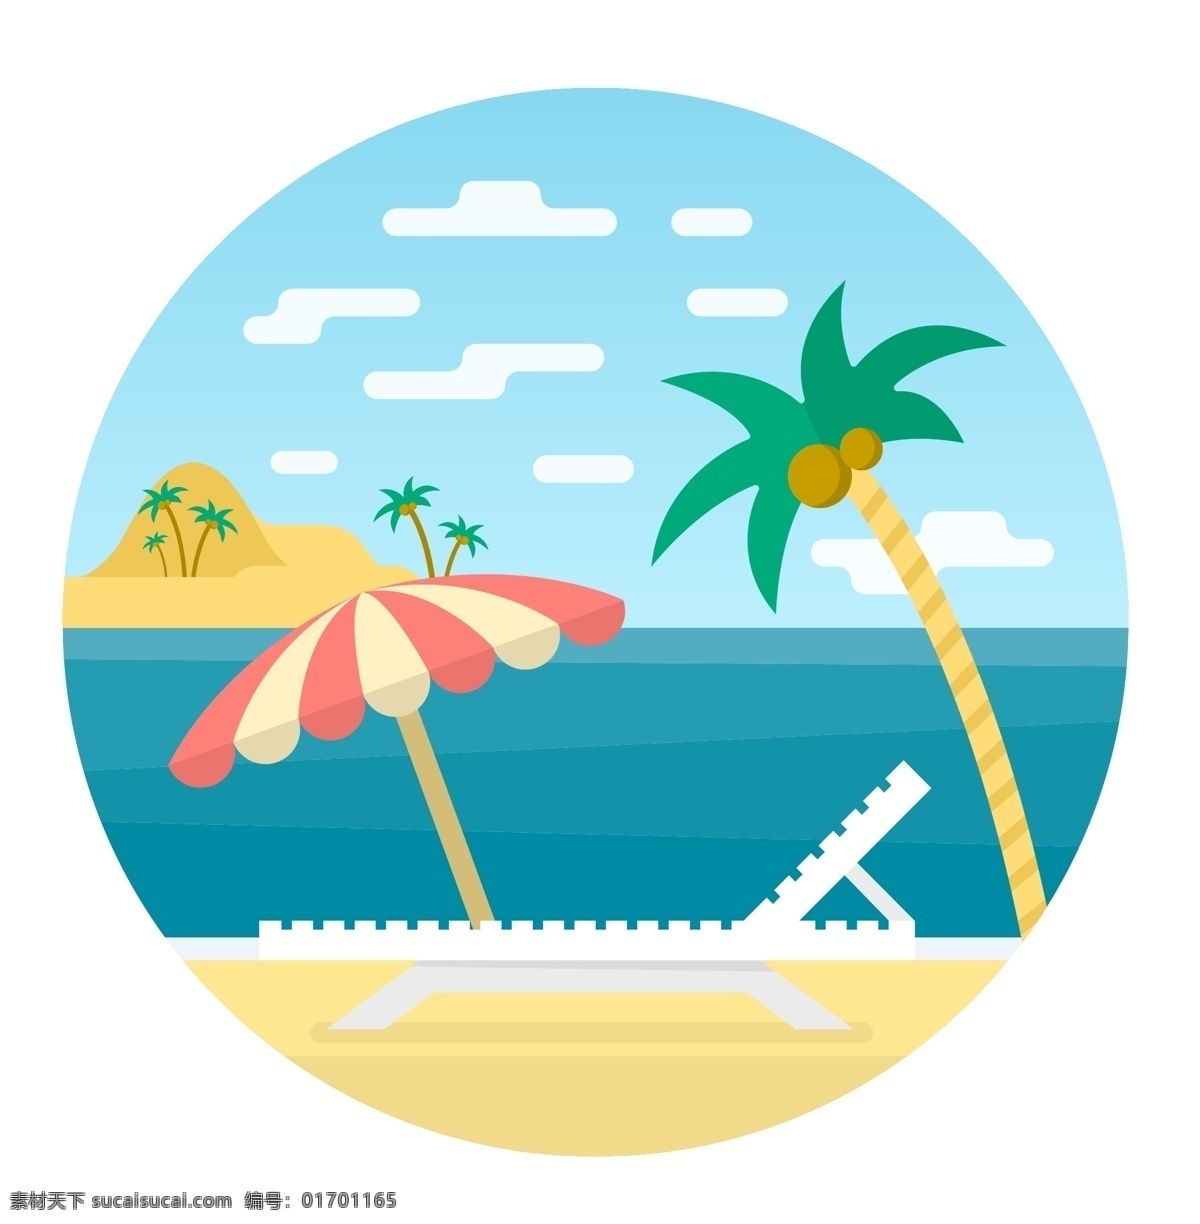 夏天插画 水上插画 水插画 游泳圈 轮船 椰子树 椰子树手绘 海洋插画 海边插画 元素